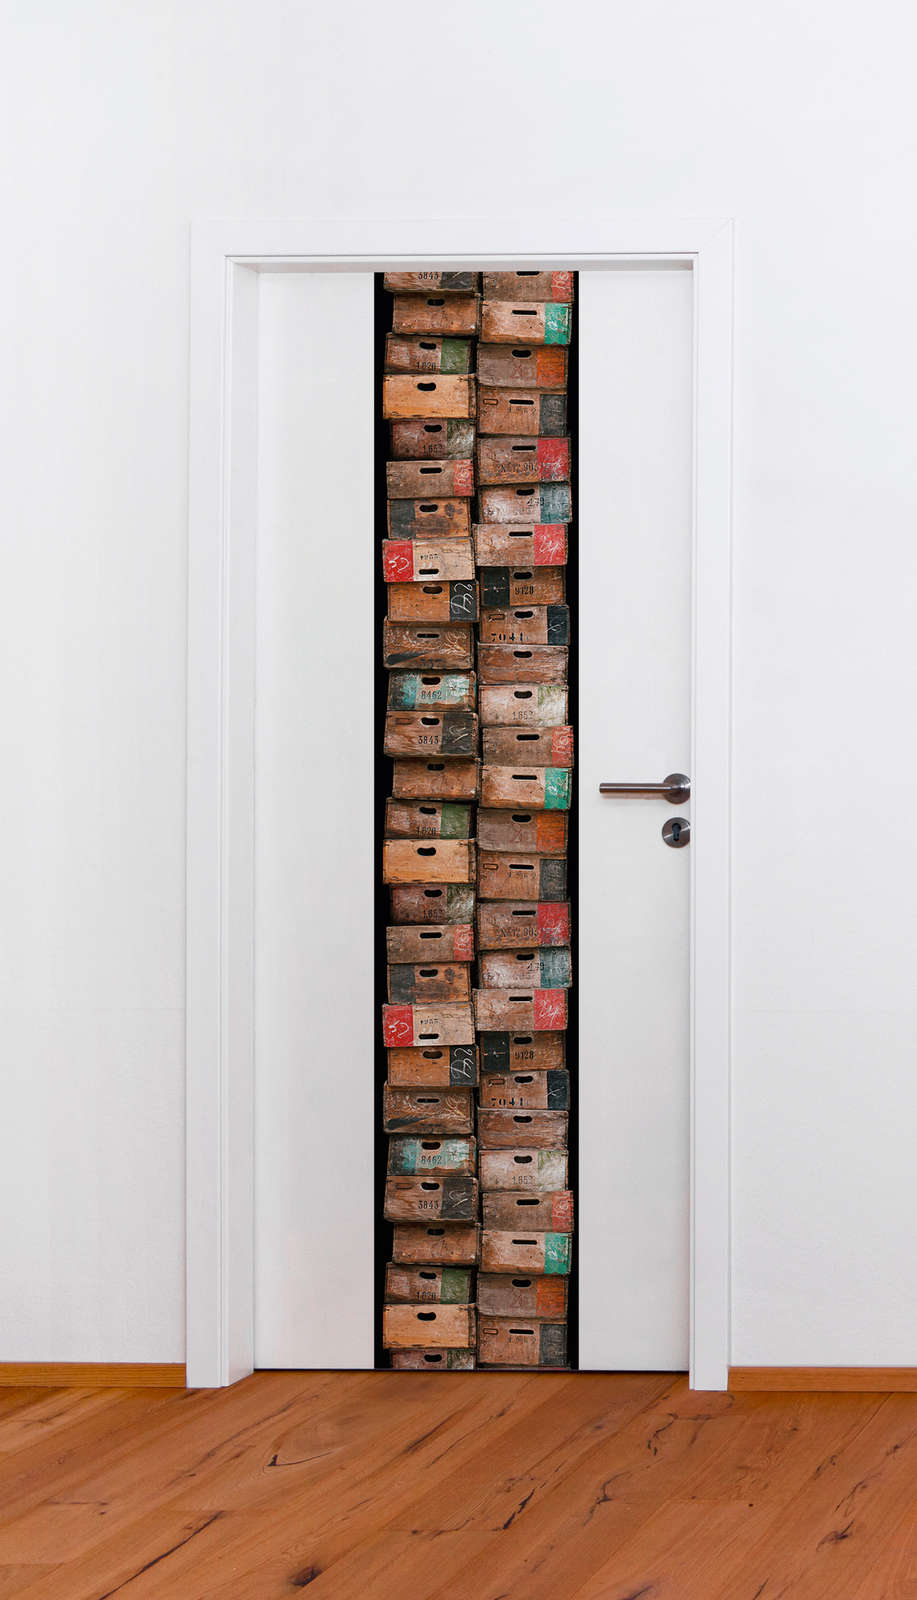             Motiefbehang met rustieke houten kistjes in used look - bruin, kleurrijk
        